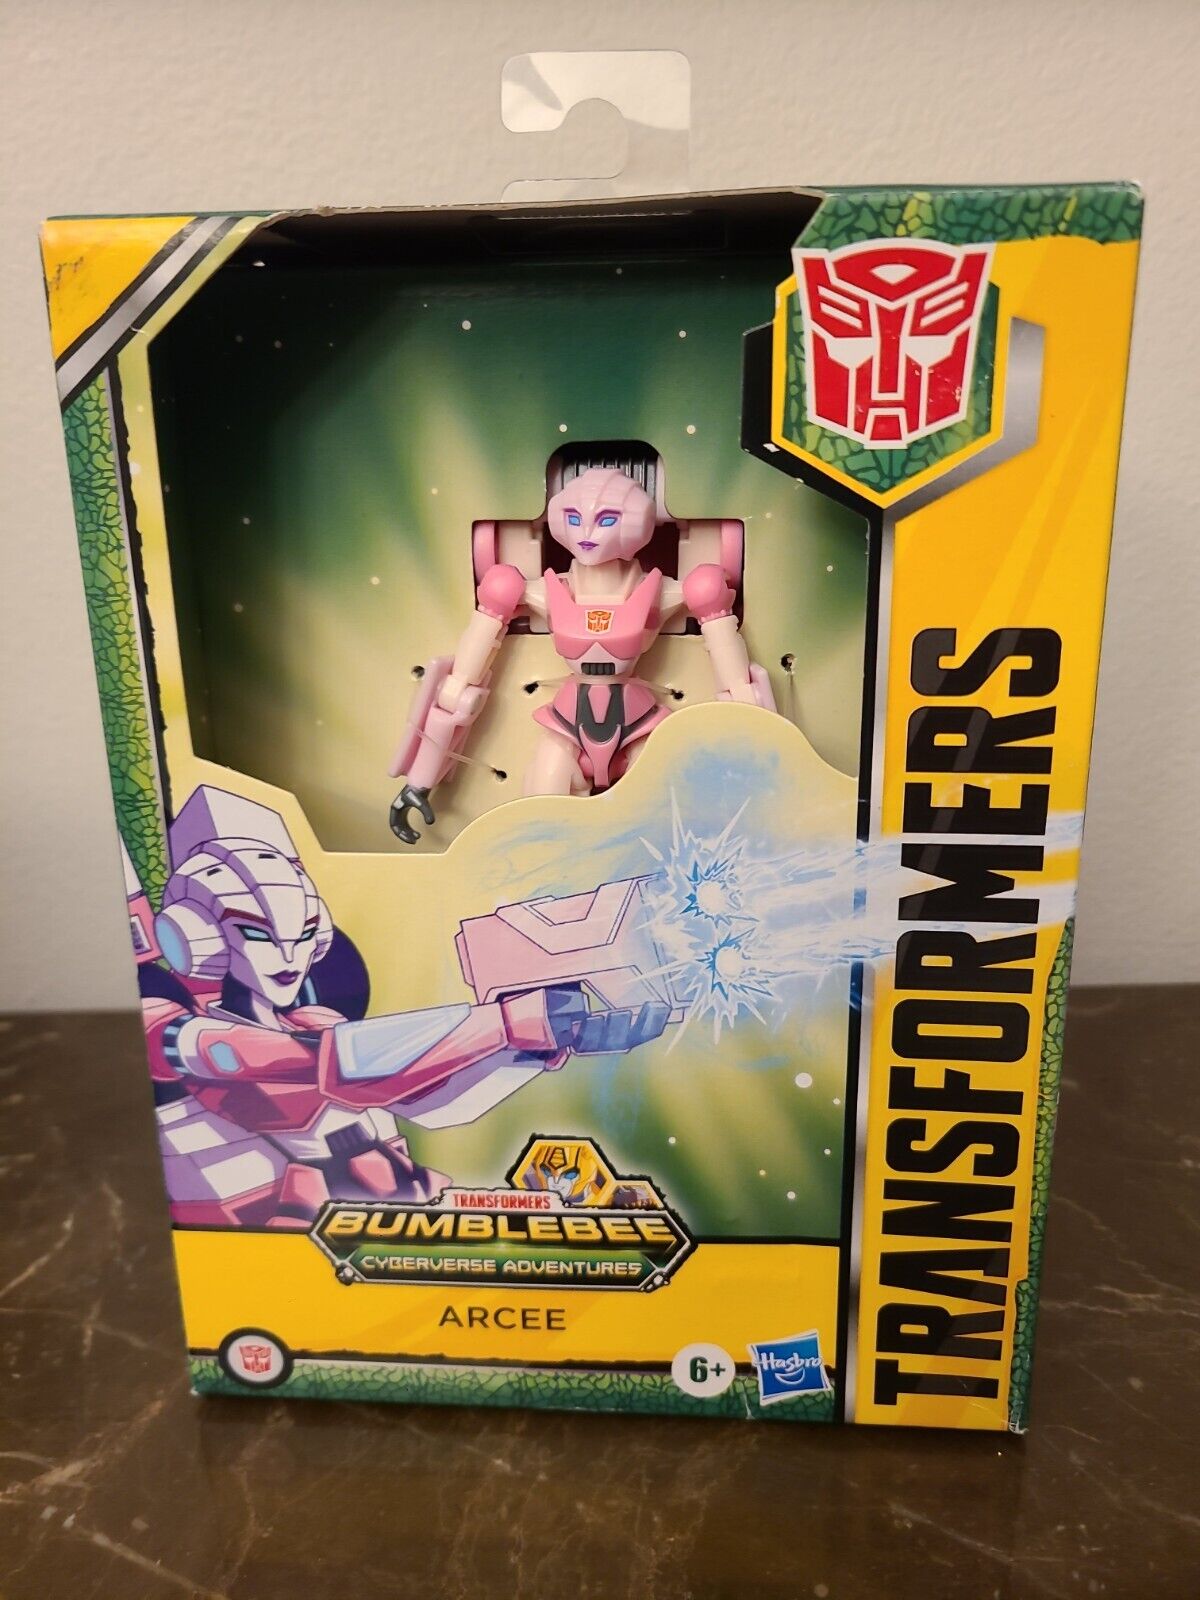 Transformers Bumblebee Cyberverse Adventures - Deluxe Arcee Action Figure - NEW